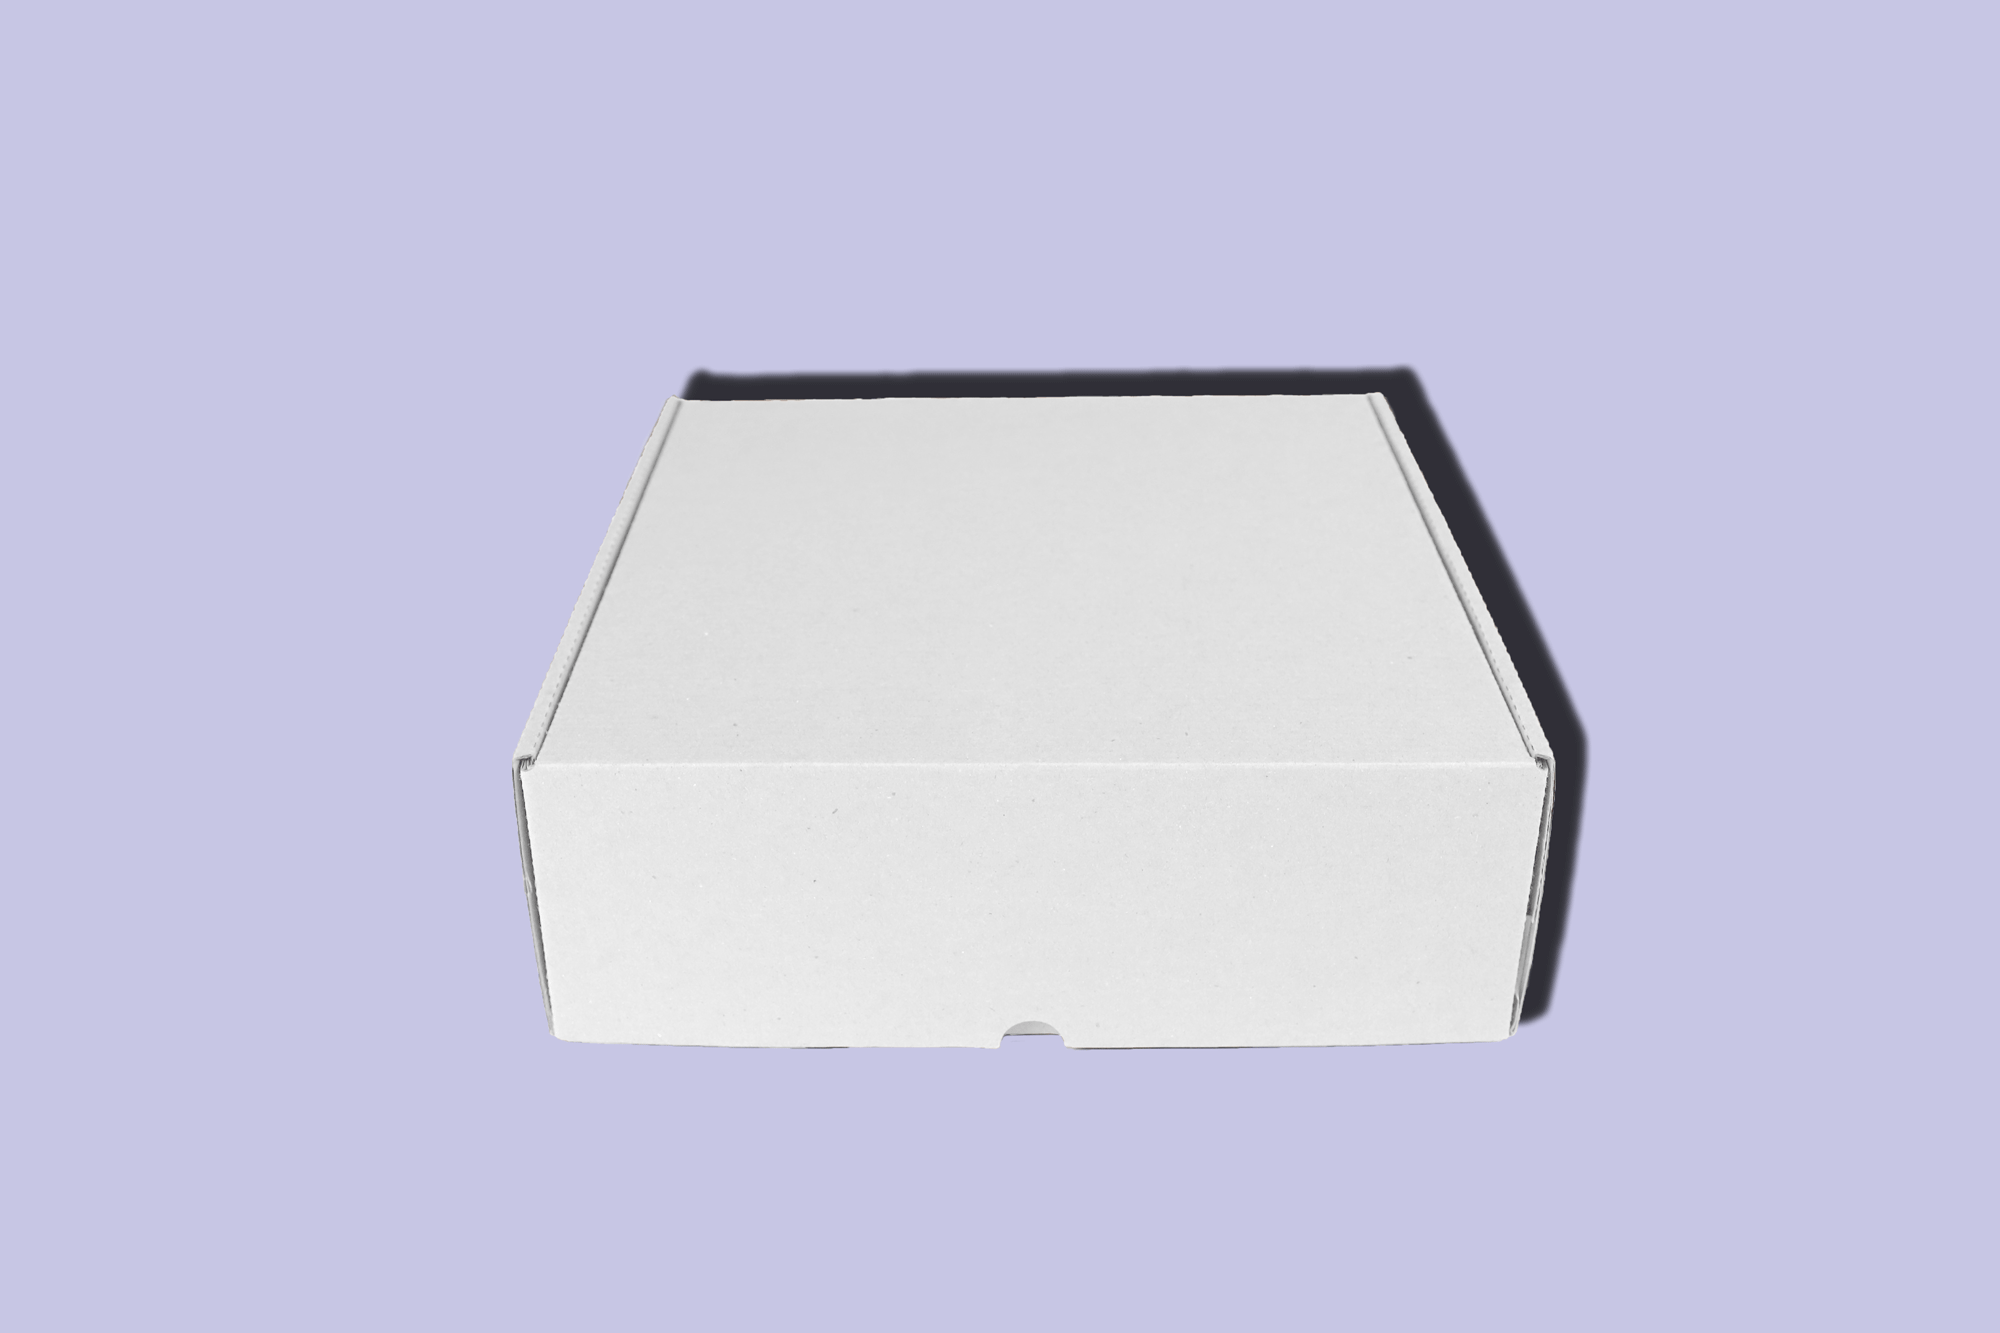 Caja blanca en una pieza 30x30x30 cm - 10 U - Smartpackaging